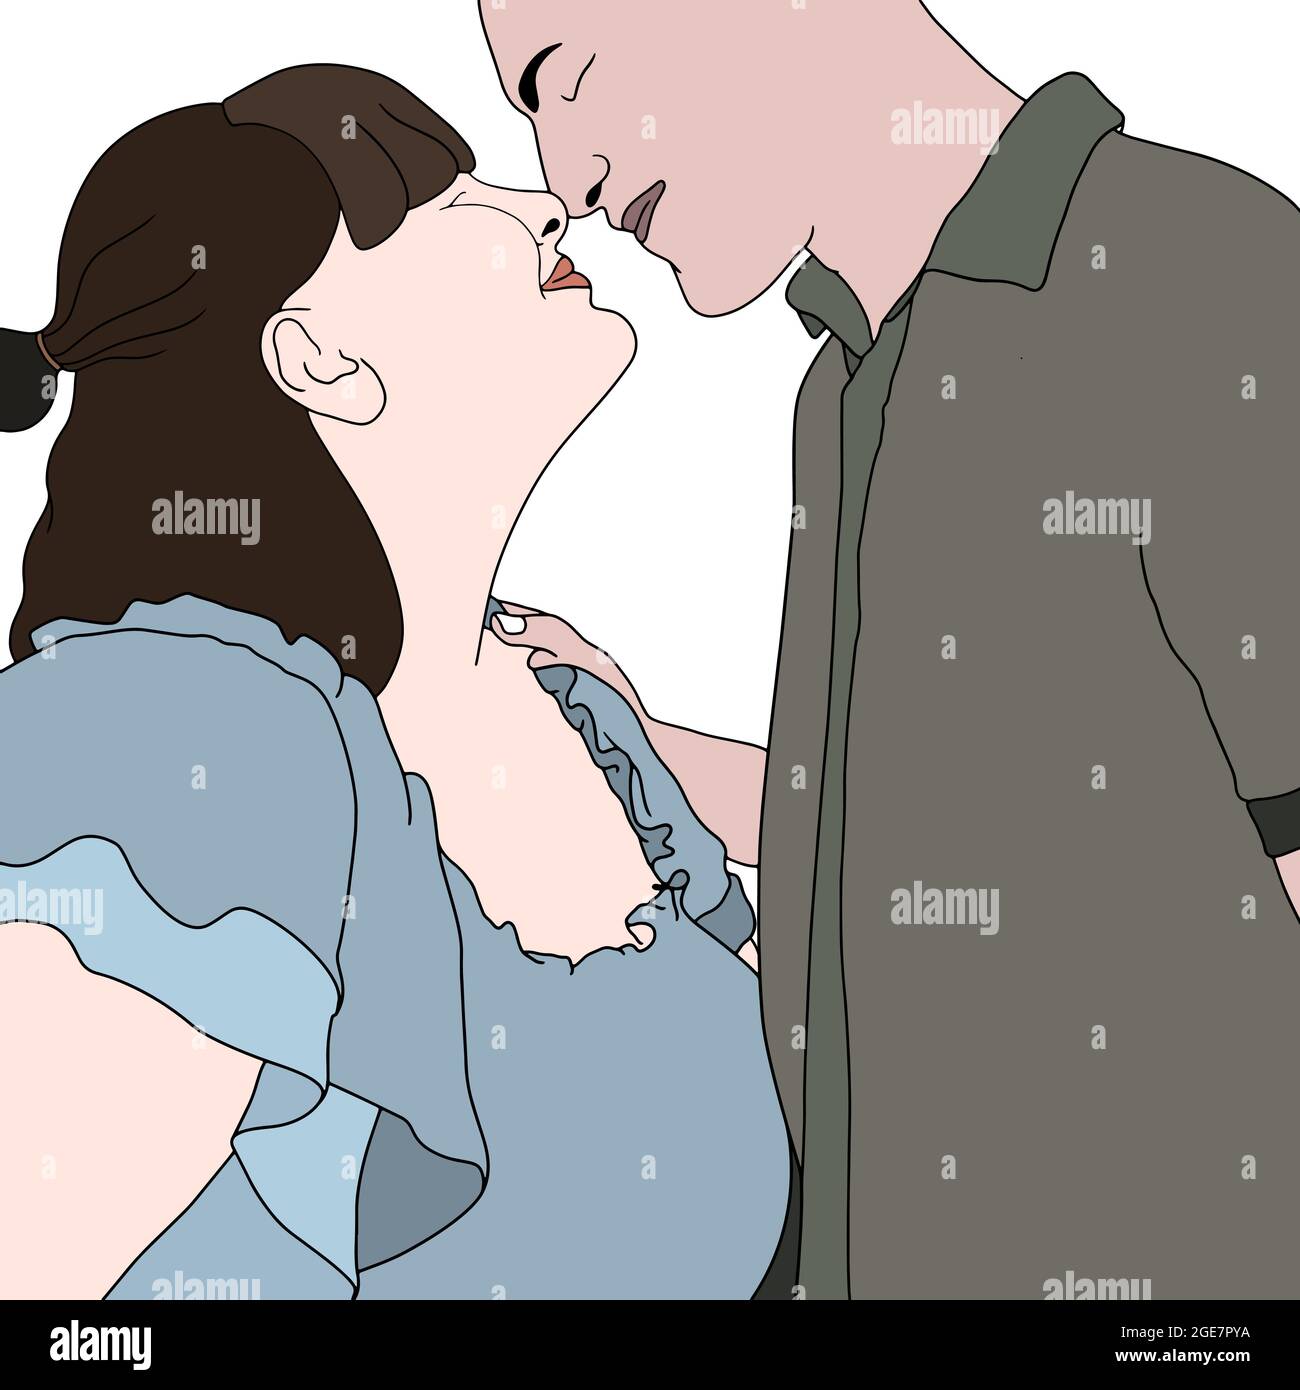 Illustrazione di un personaggio disegnato a mano di una bella coppia romantica molto vicini l'uno all'altro. Foto Stock